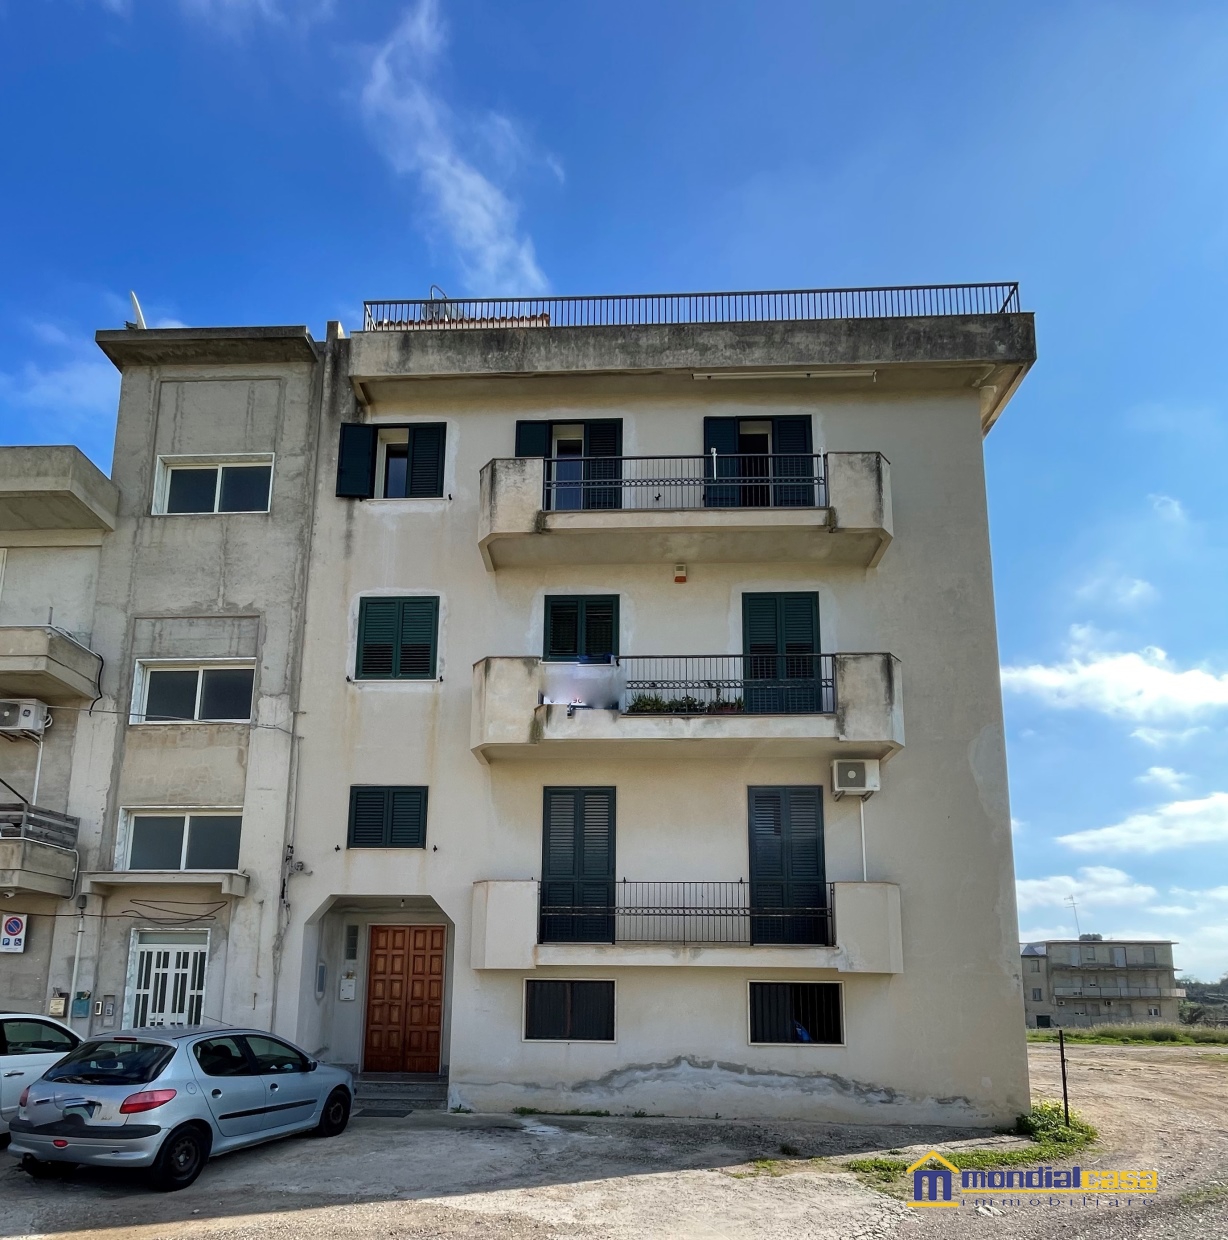 Appartamento in vendita a Rosolini, 7 locali, prezzo € 180.000 | CambioCasa.it